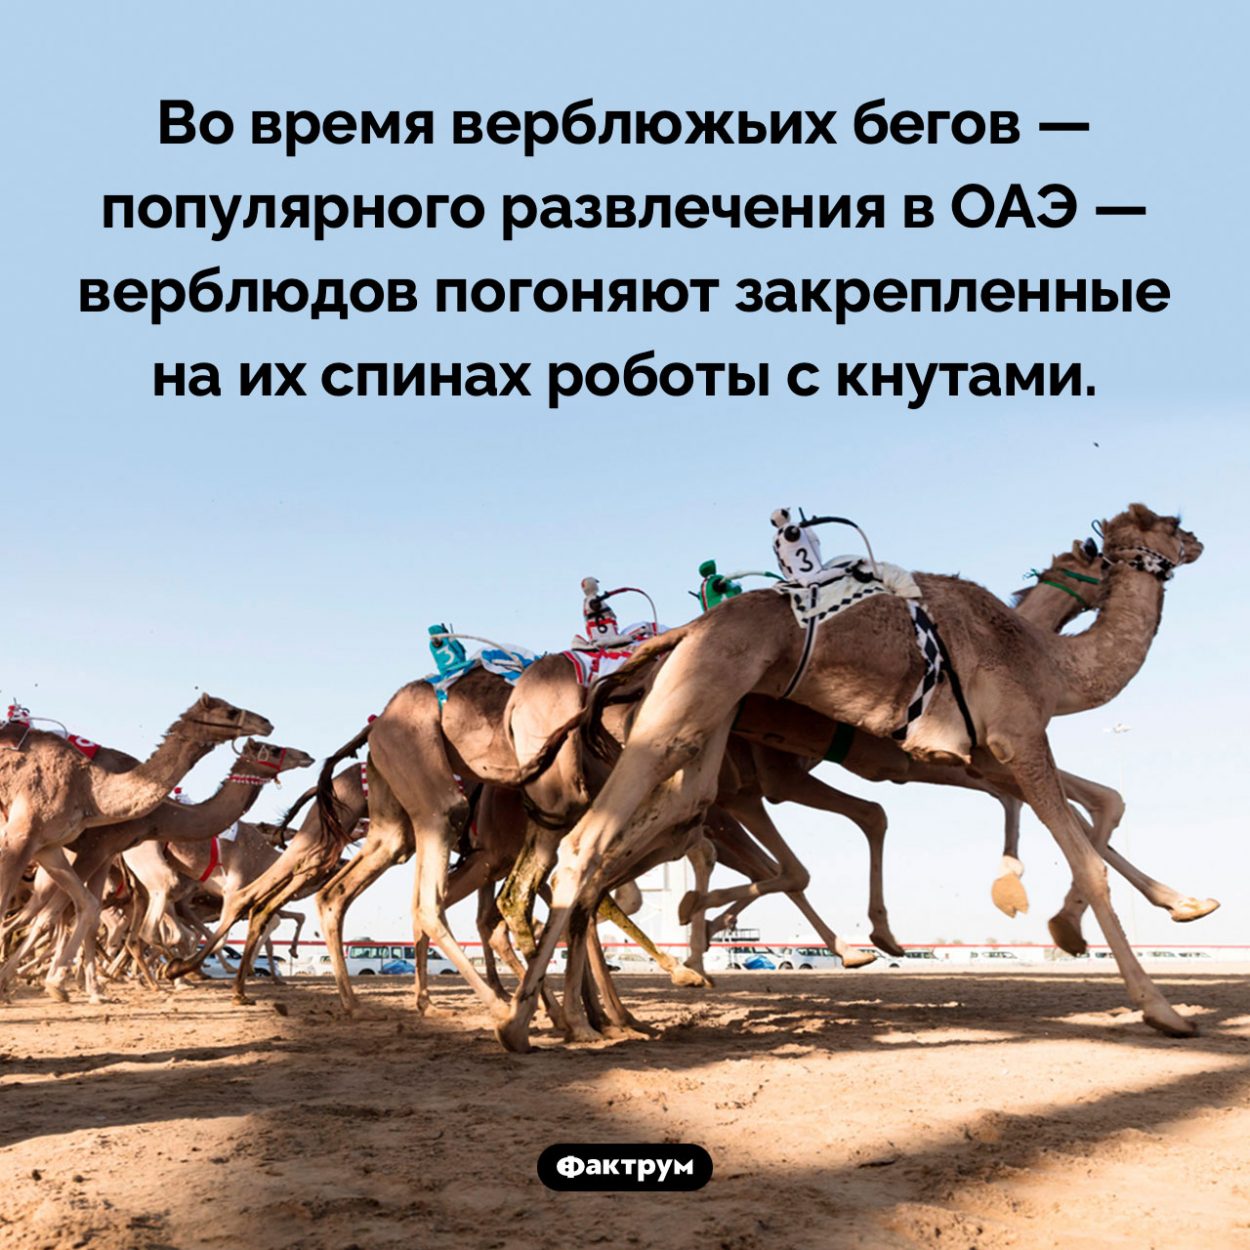 Роботы с кнутами. Во время верблюжьих бегов — популярного развлечения в ОАЭ — верблюдов погоняют закрепленные на их спинах роботы с кнутами.